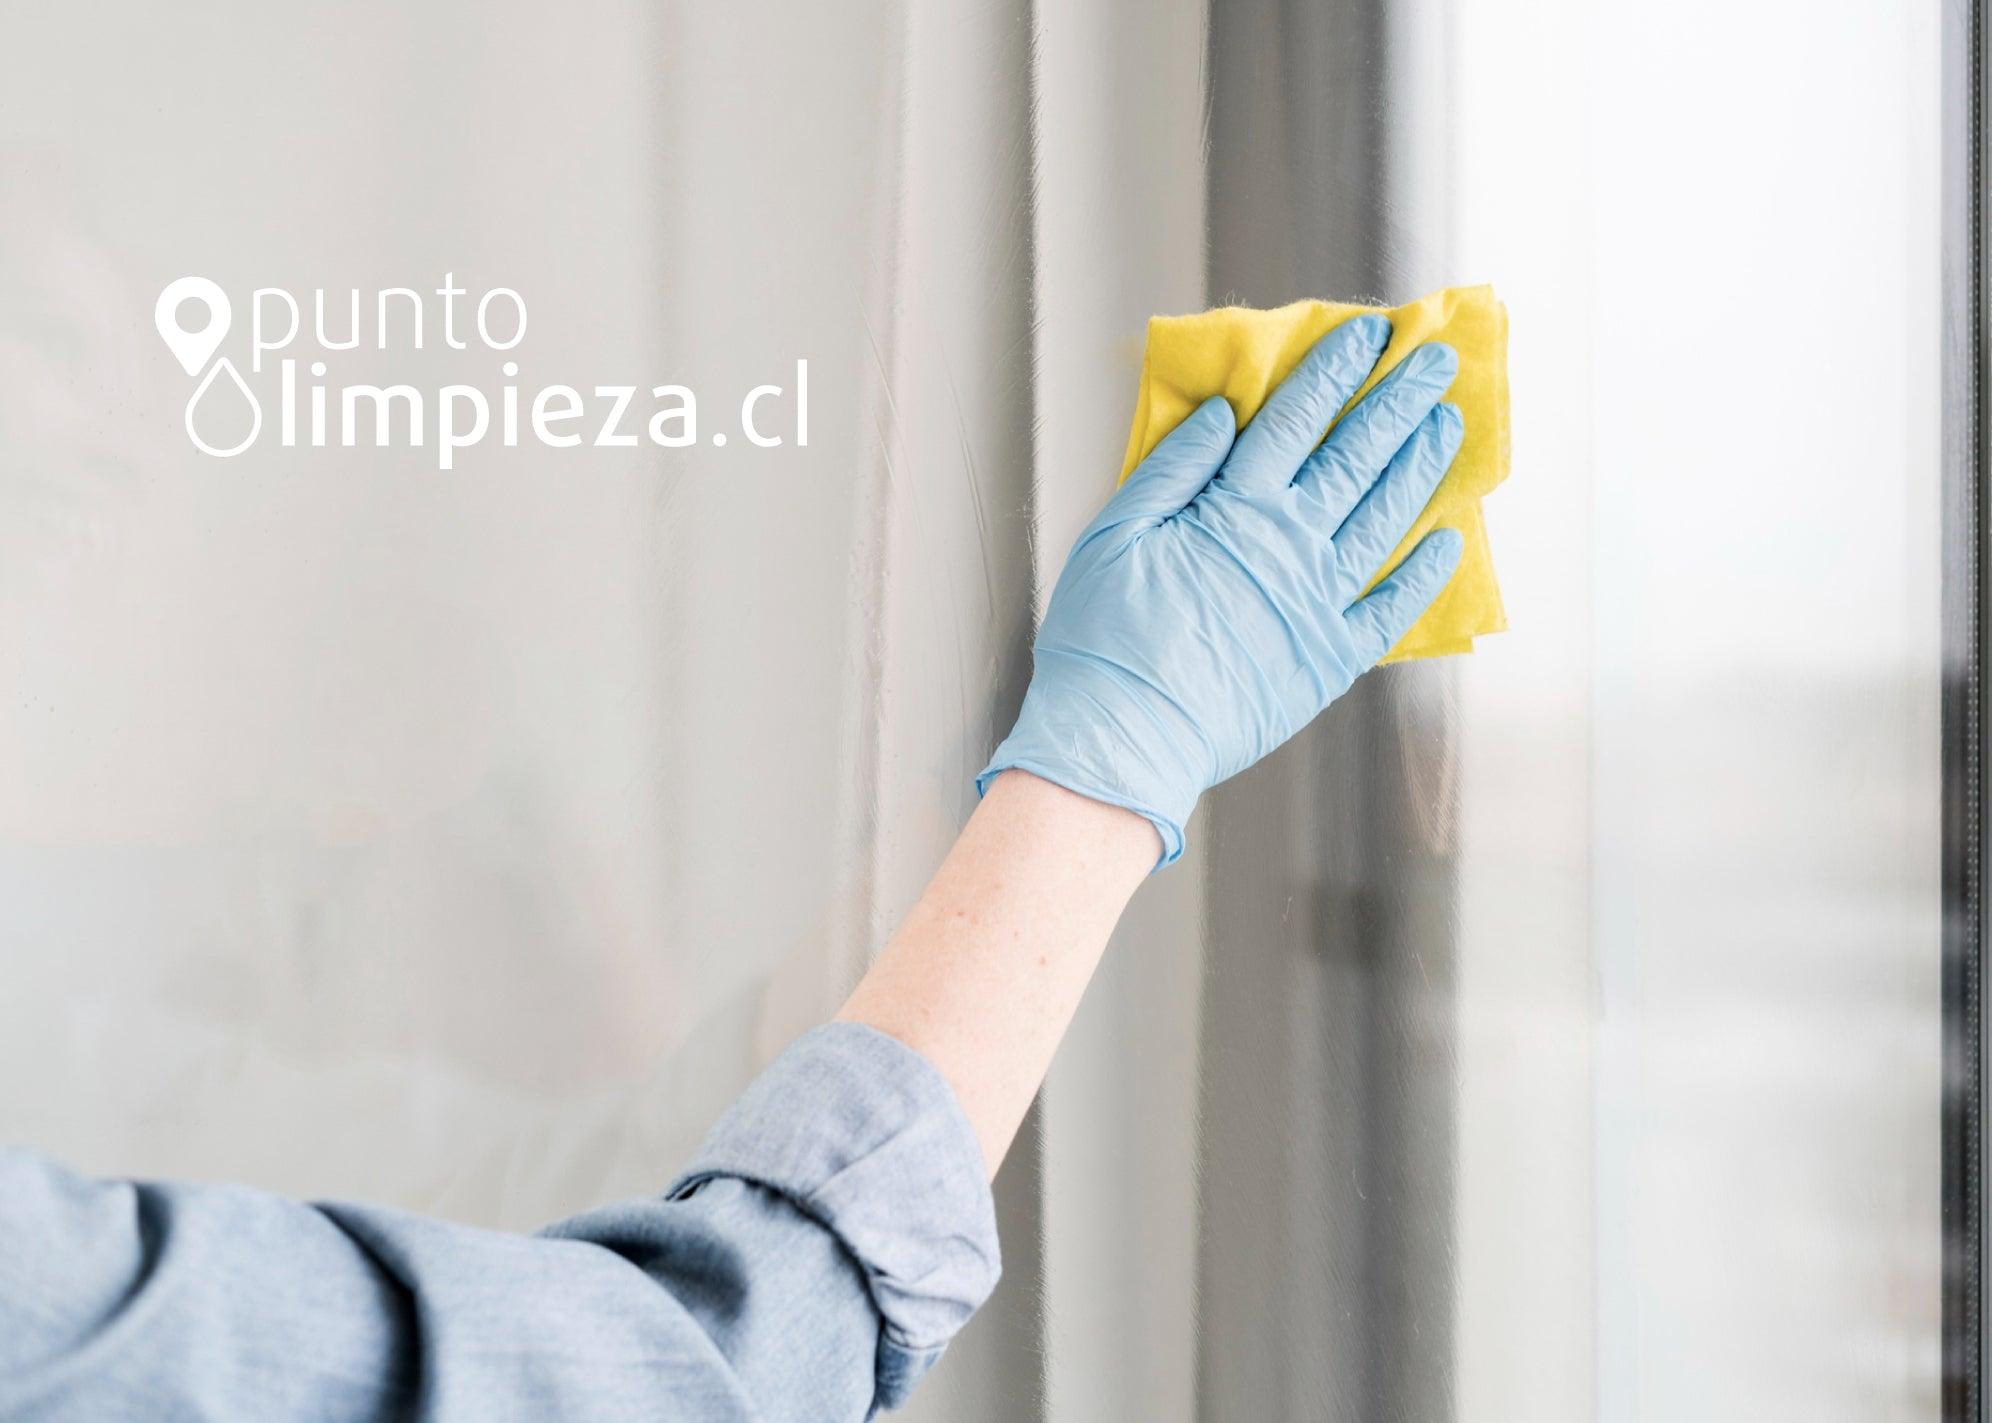 Limpiar vidrios de ventanas de forma eficaz